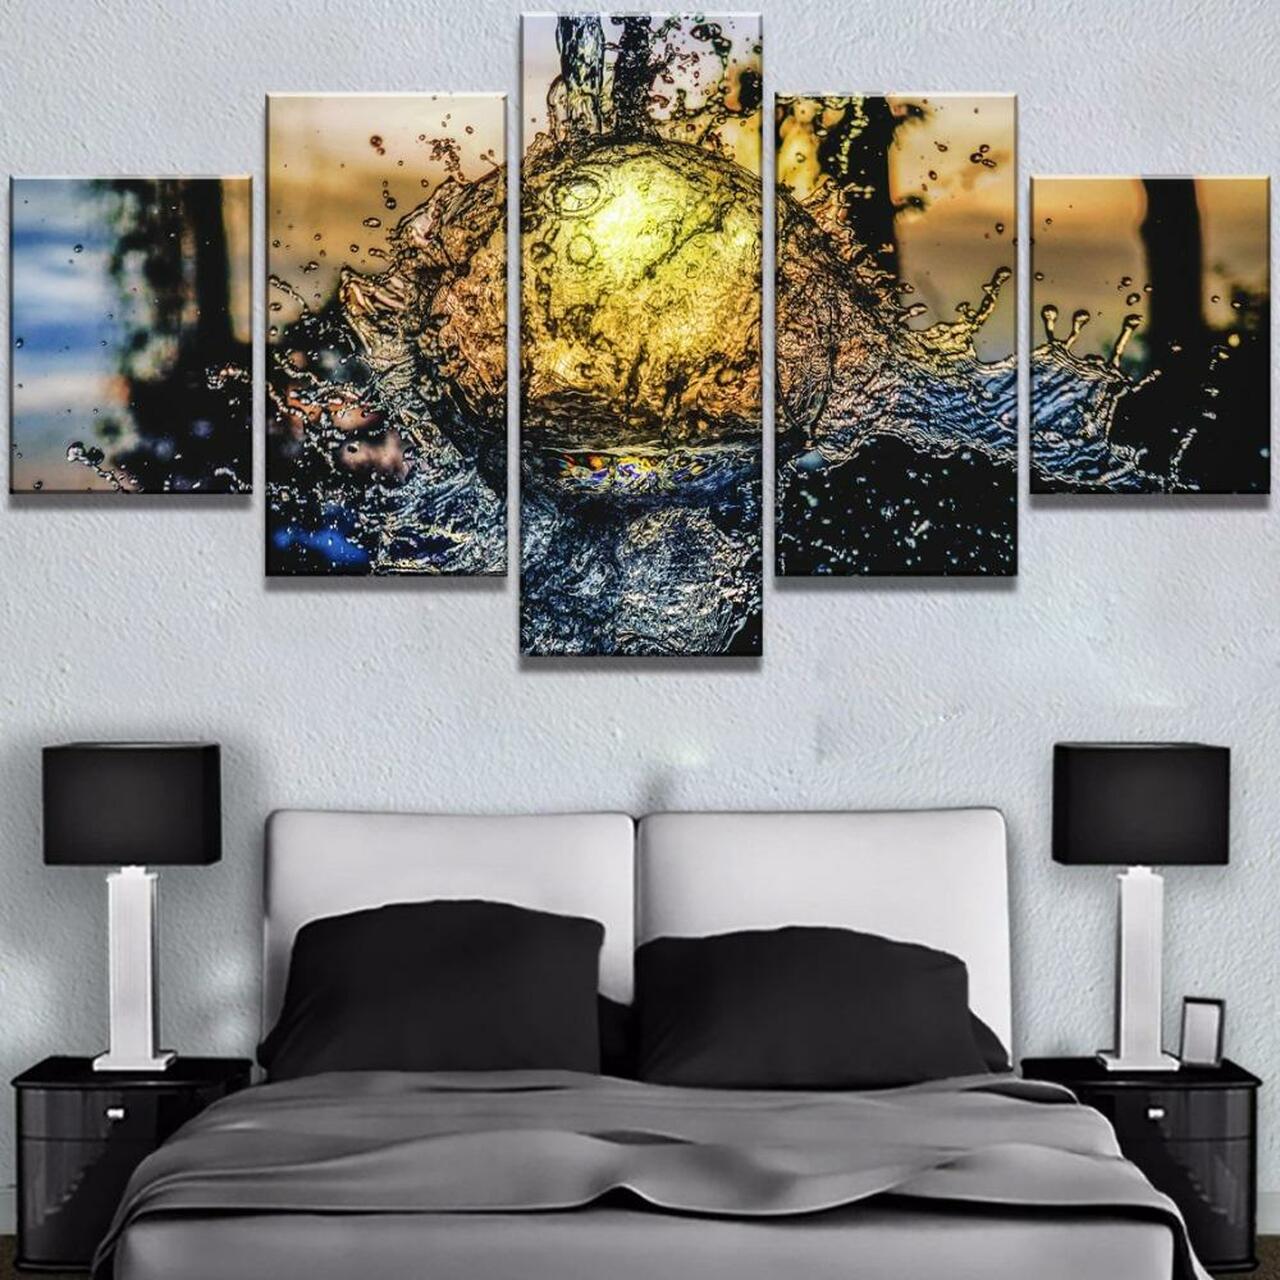 water ball sunrise 5 pices peinture sur toile impression sur toile toile art pour la dcoration intrieuretd4bj